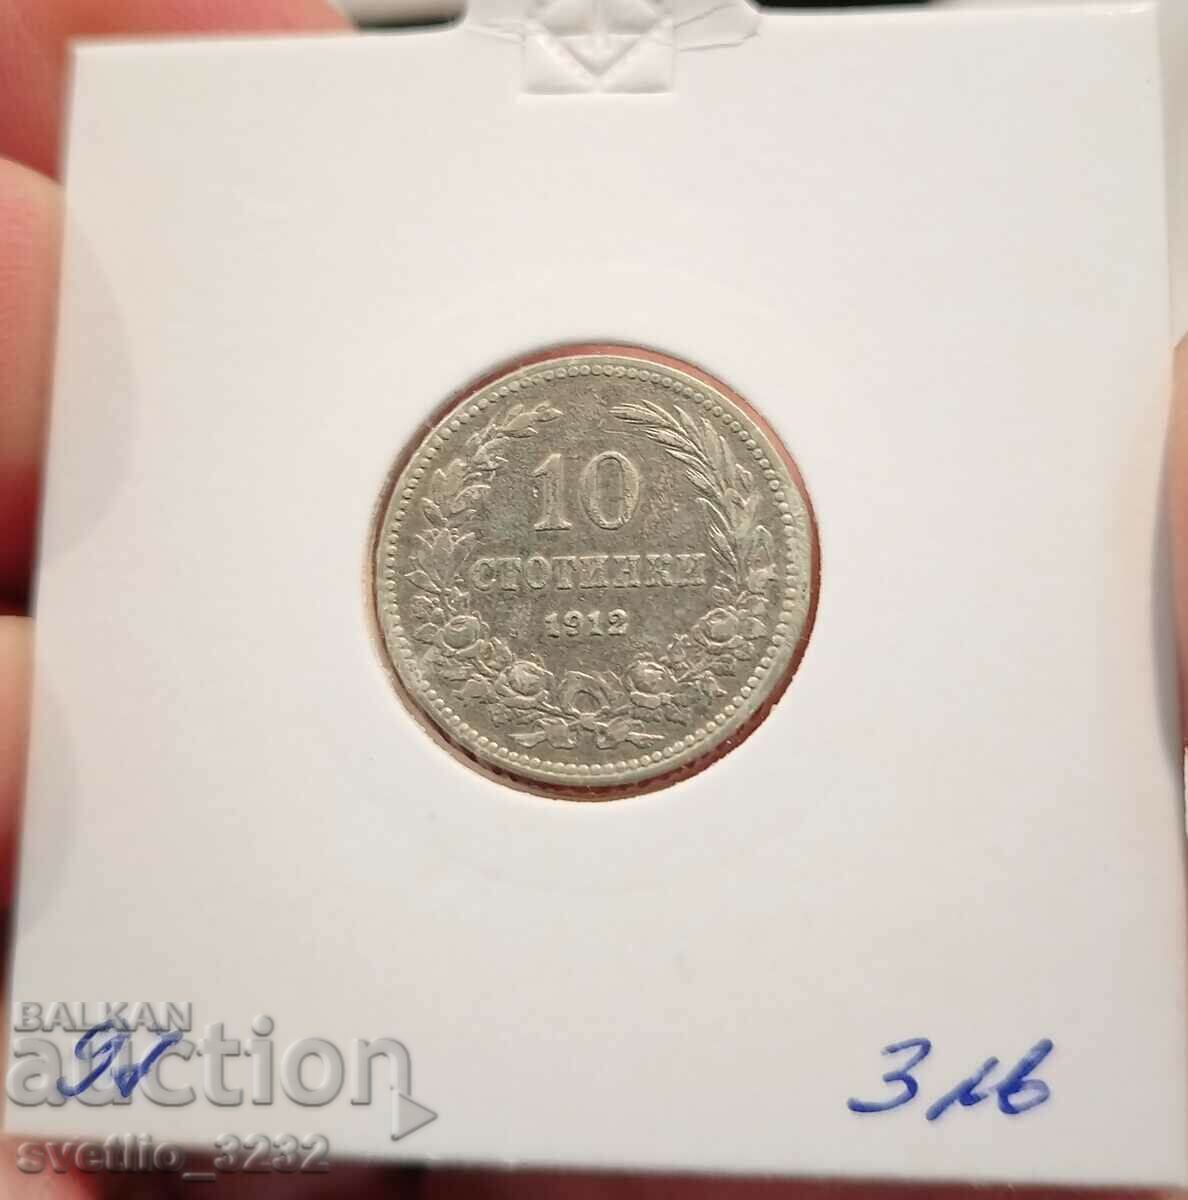 10 σεντς το 1912